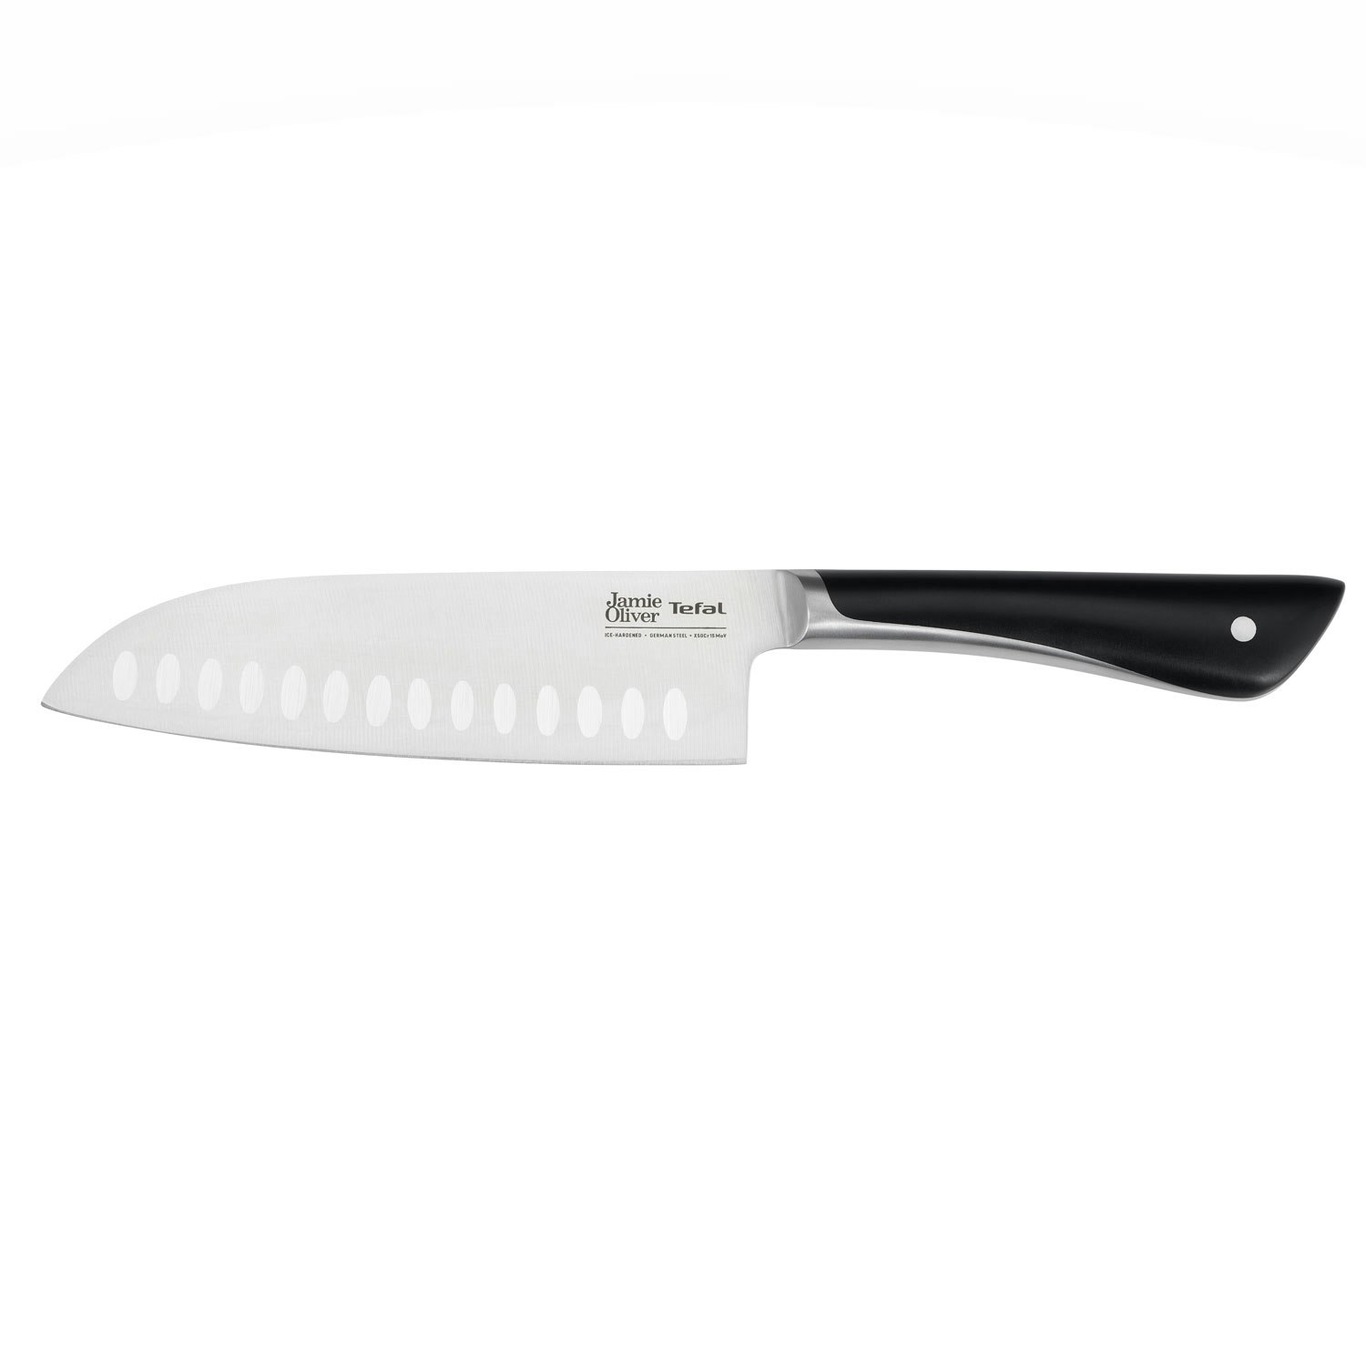 https://royaldesign.com/image/2/tefal-jamie-oliver-santoku-knife-165-cm-0?w=800&quality=80